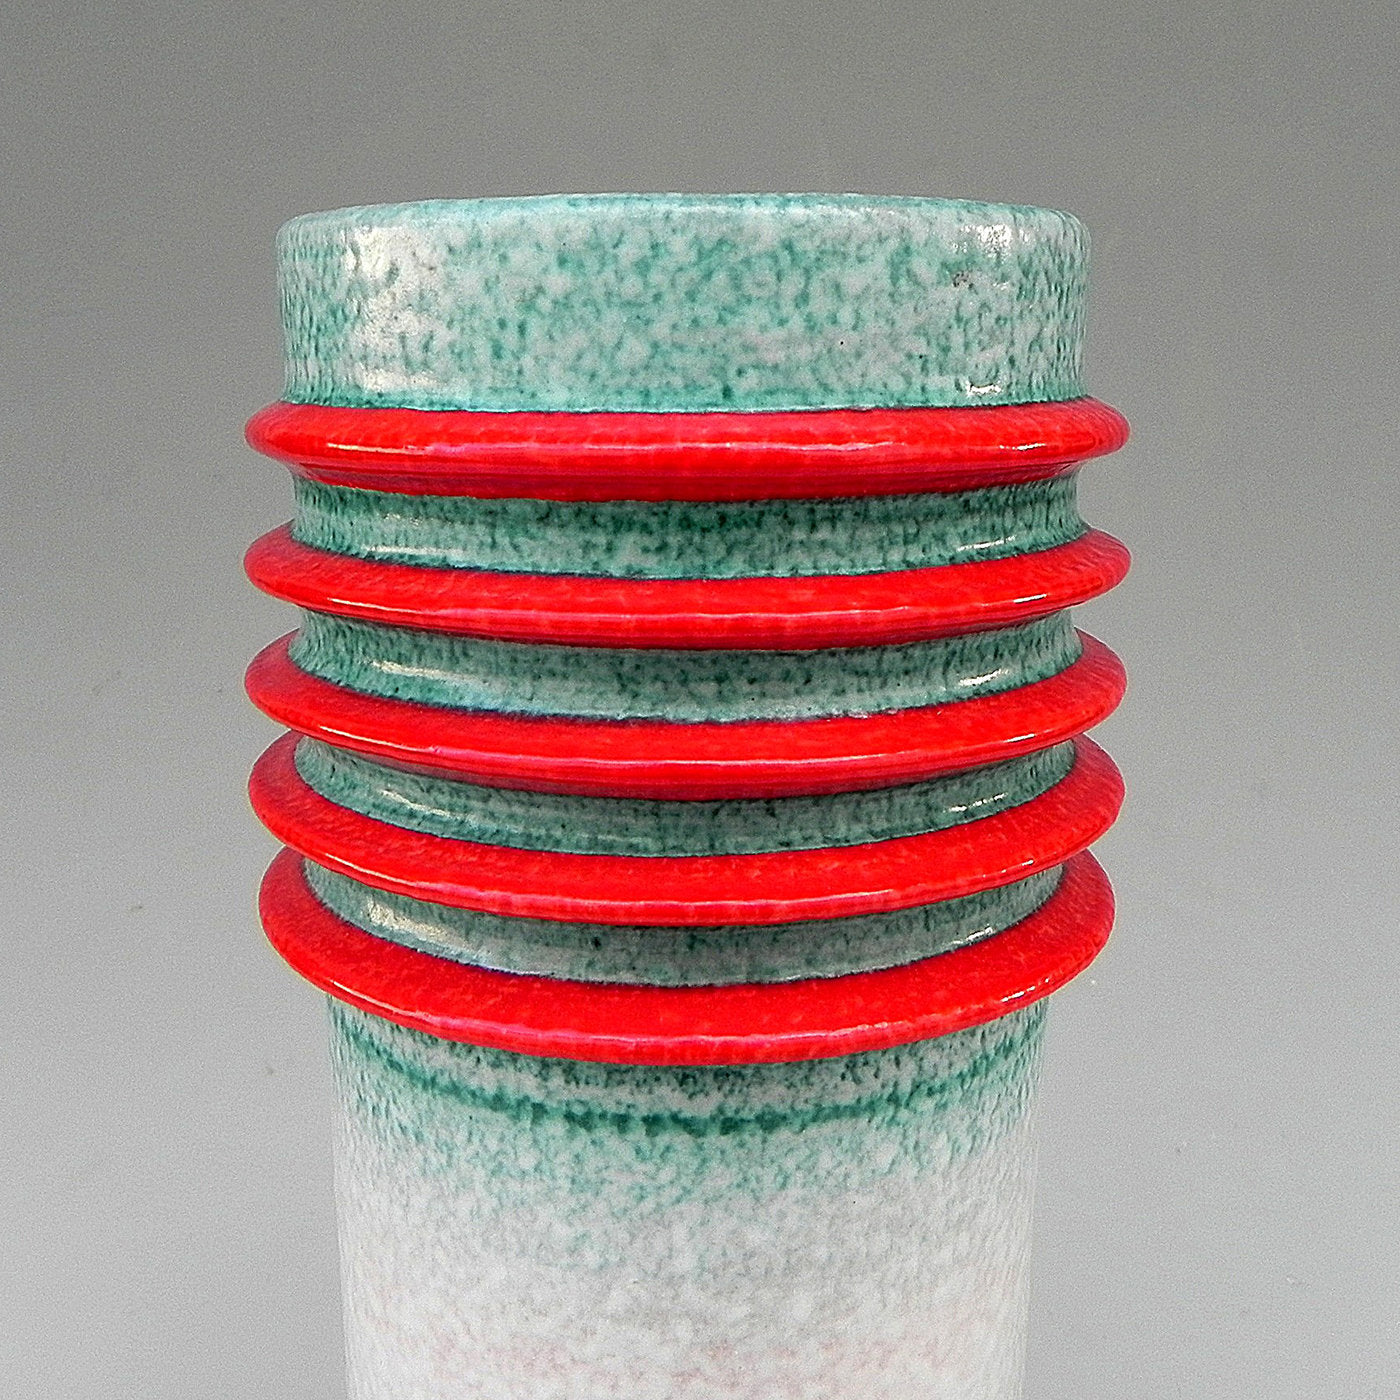 Motorato Assoluto Ceramic Vase - Alternative view 4